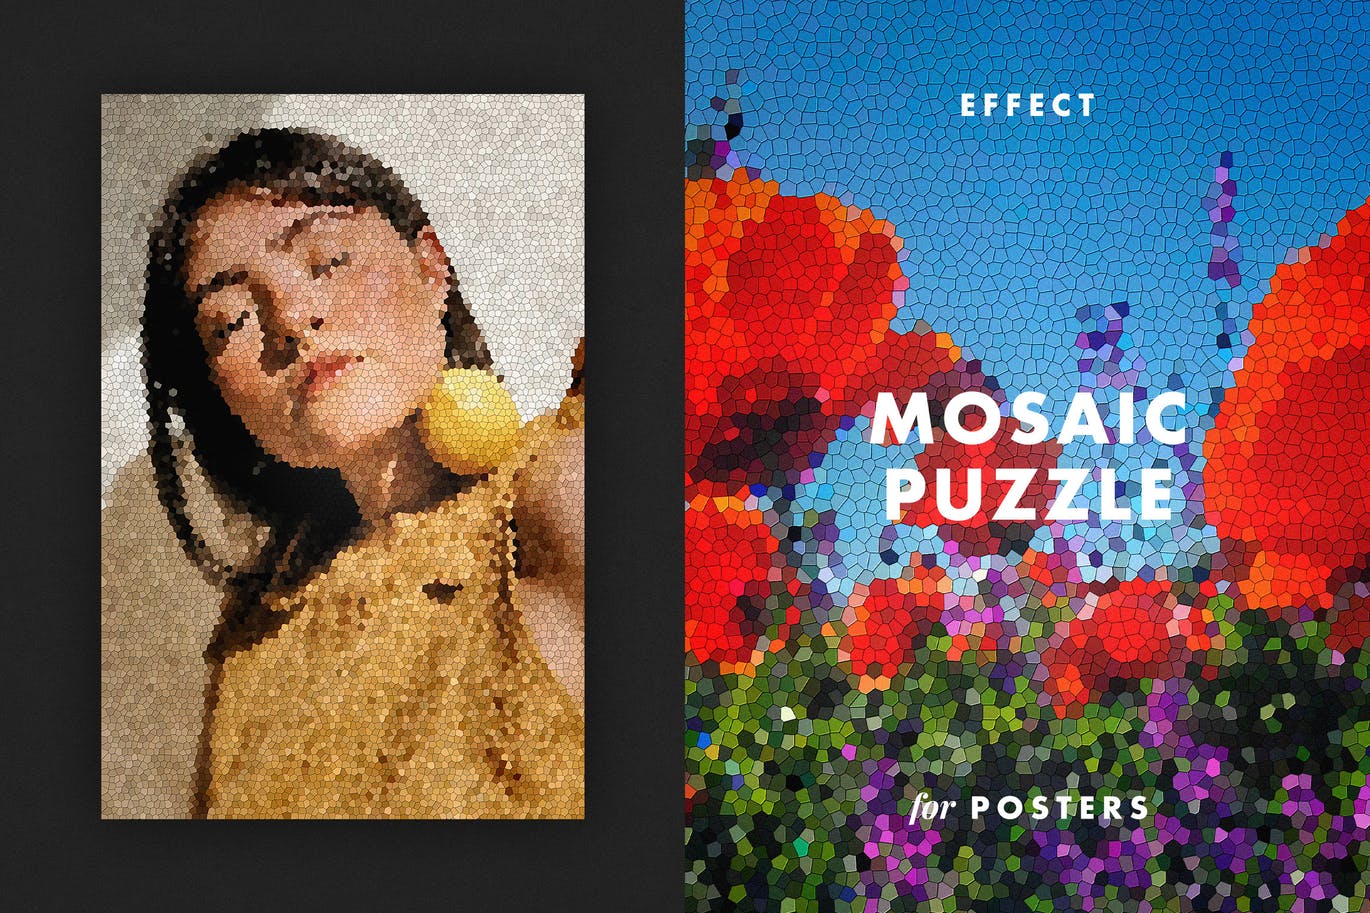 马赛克拼图效果海报模板 Mosaic Puzzle Effect for Posters 插件预设 第1张